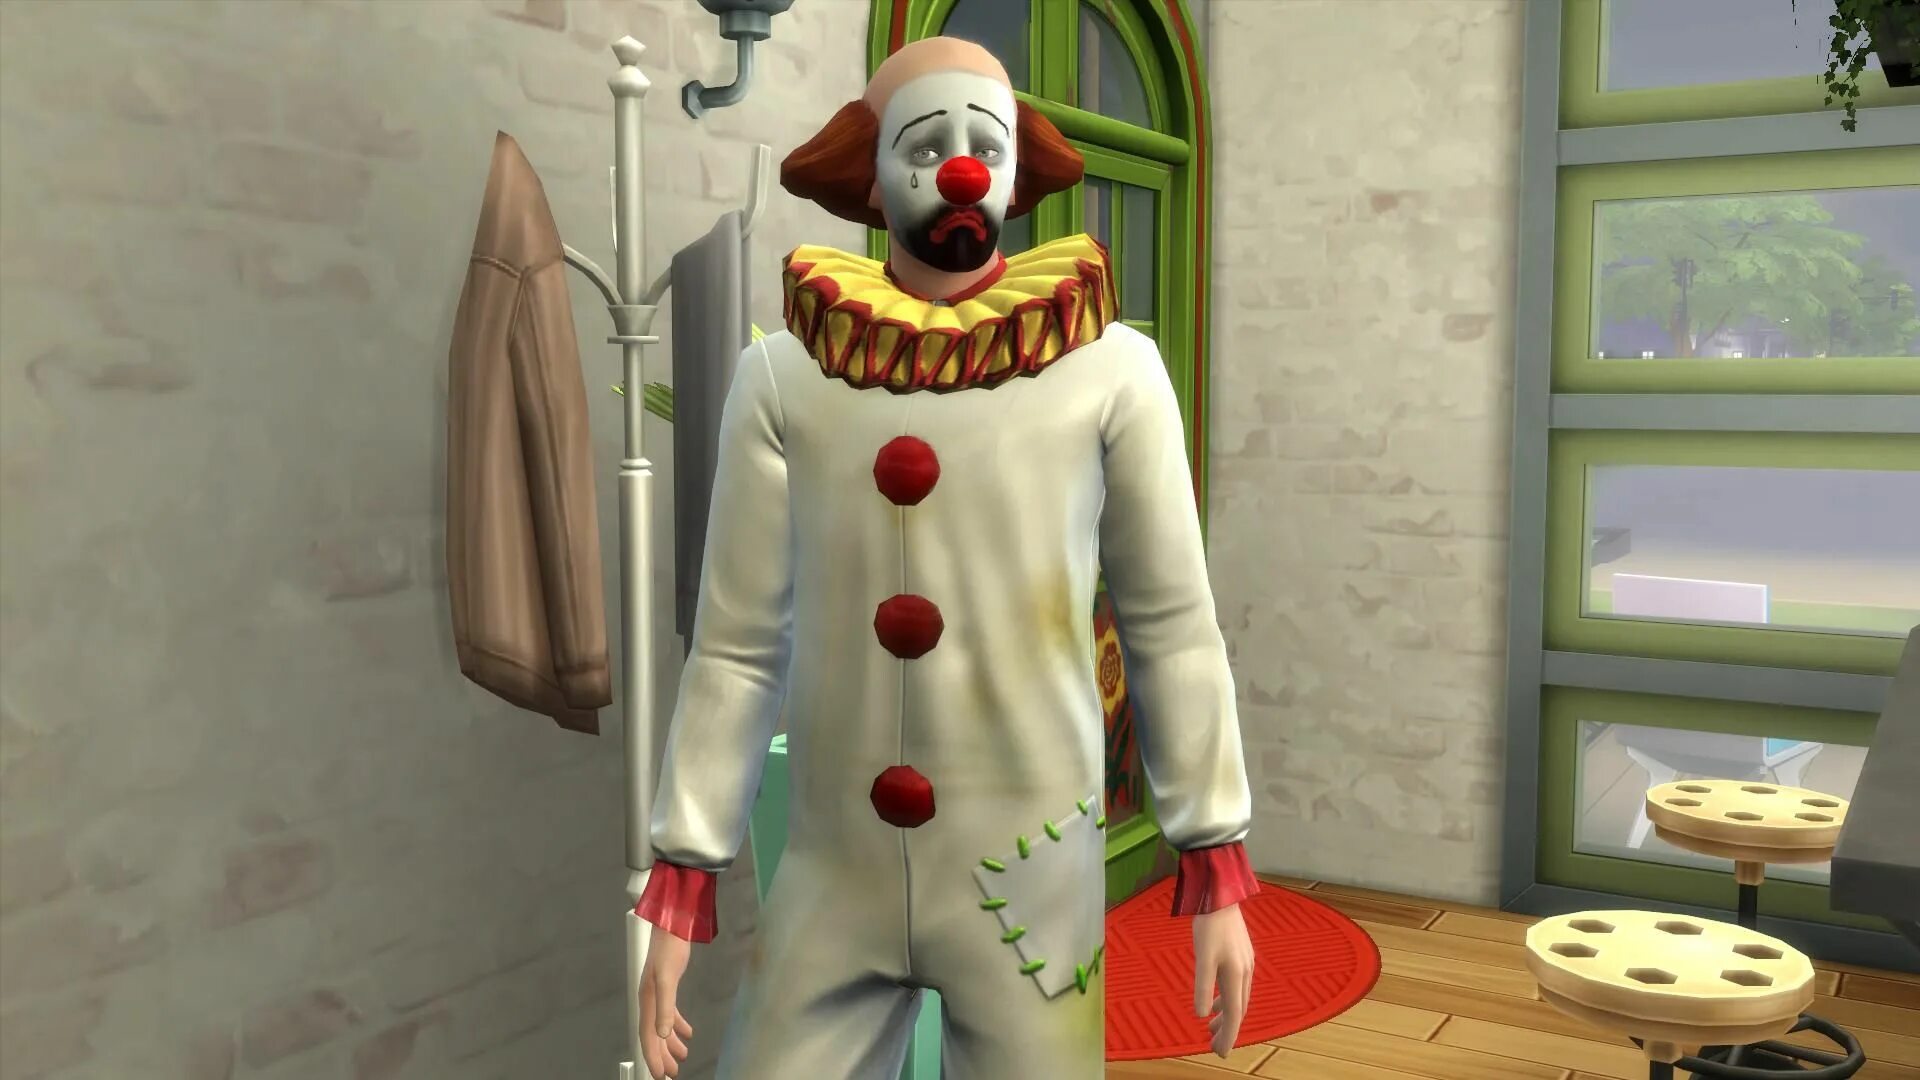 Комната клоунов. Клоун из симс 4. Трагик Клаун. Грустный клоун симс 4 картина.